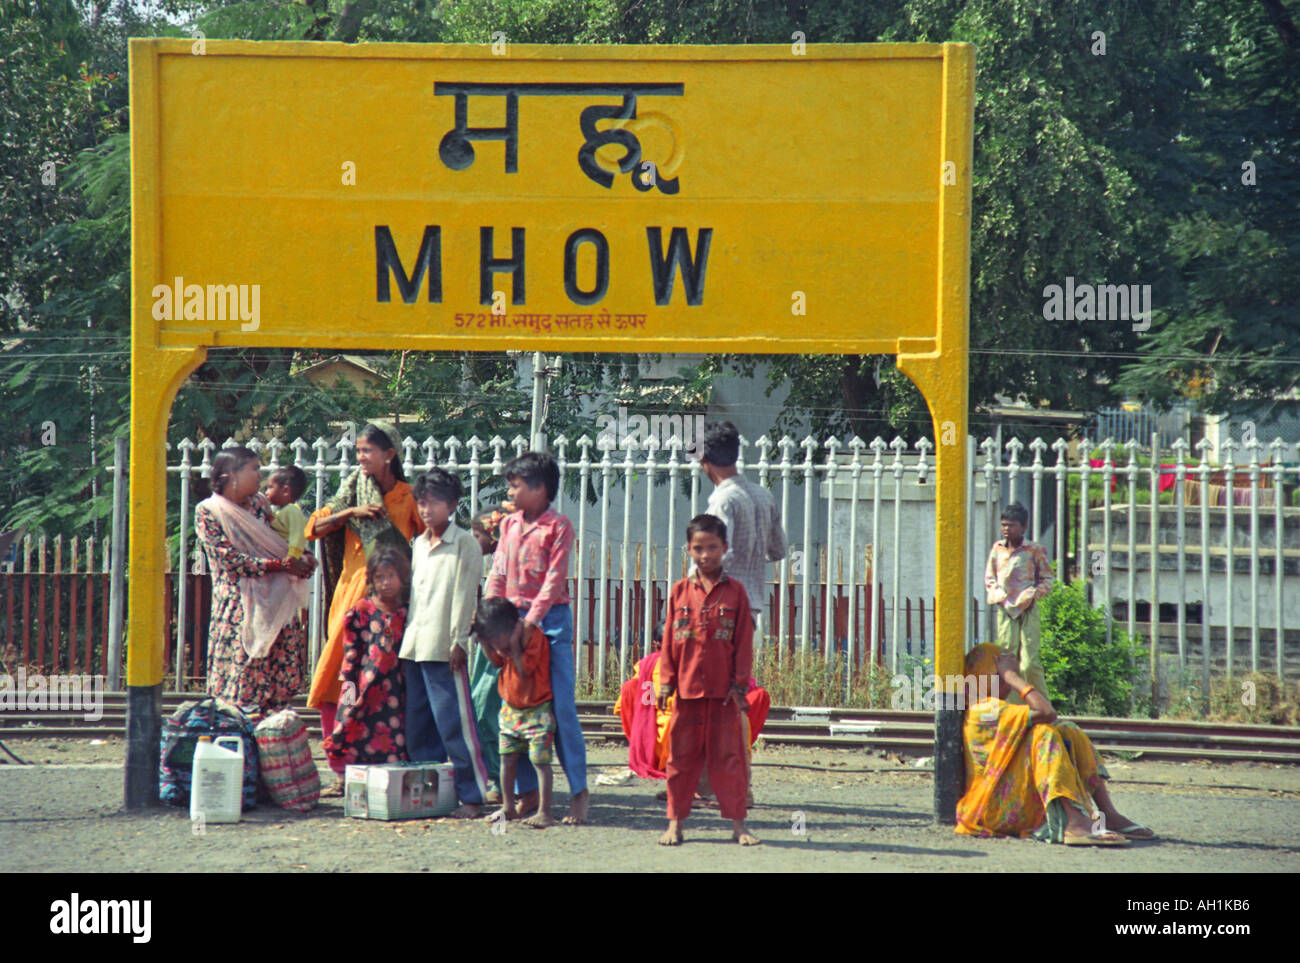 Mhow railway station Madhya Pradesh India Asia IN17 33 Stock Photo